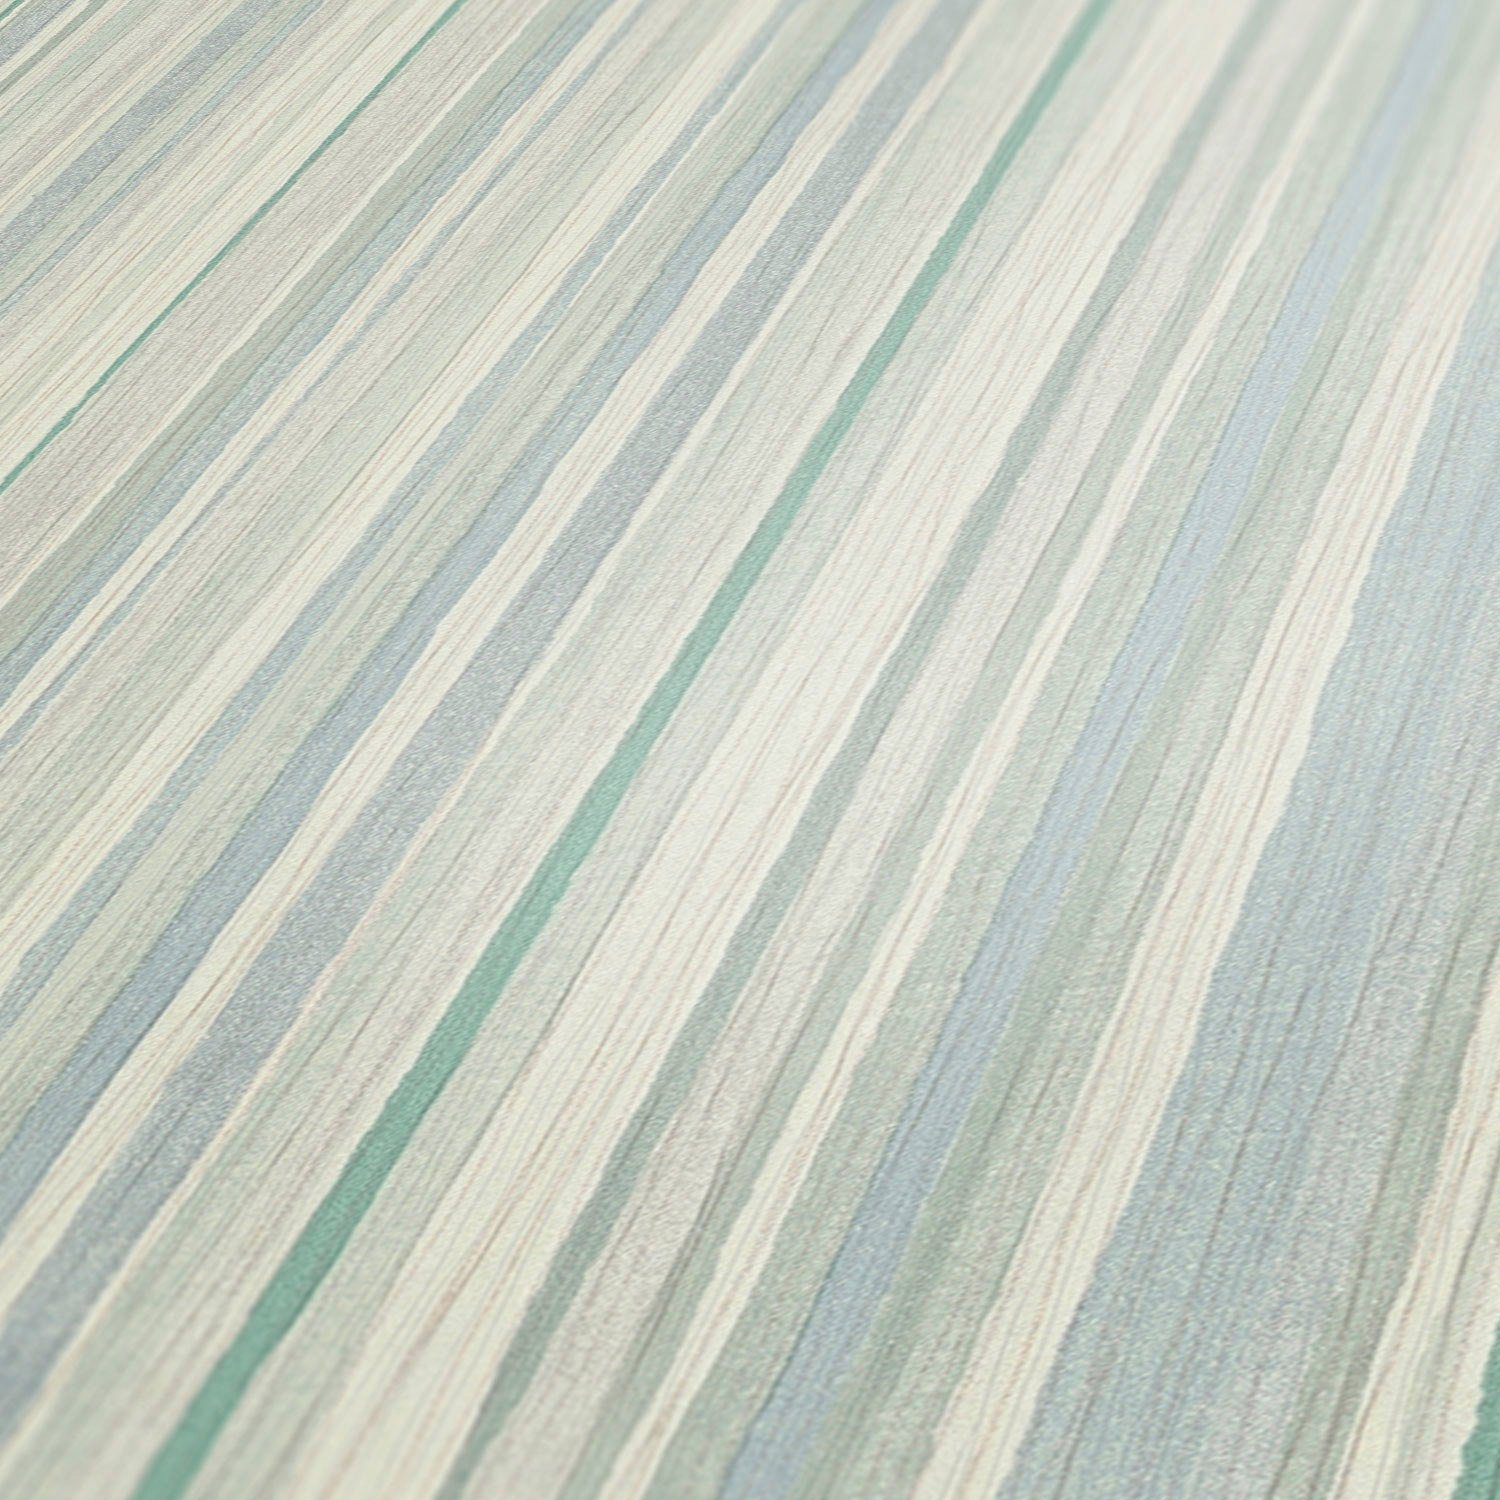 Streifen Création blau/weiß/grün Tapete Attractive, Vliestapete Streifen, gestreift, A.S.